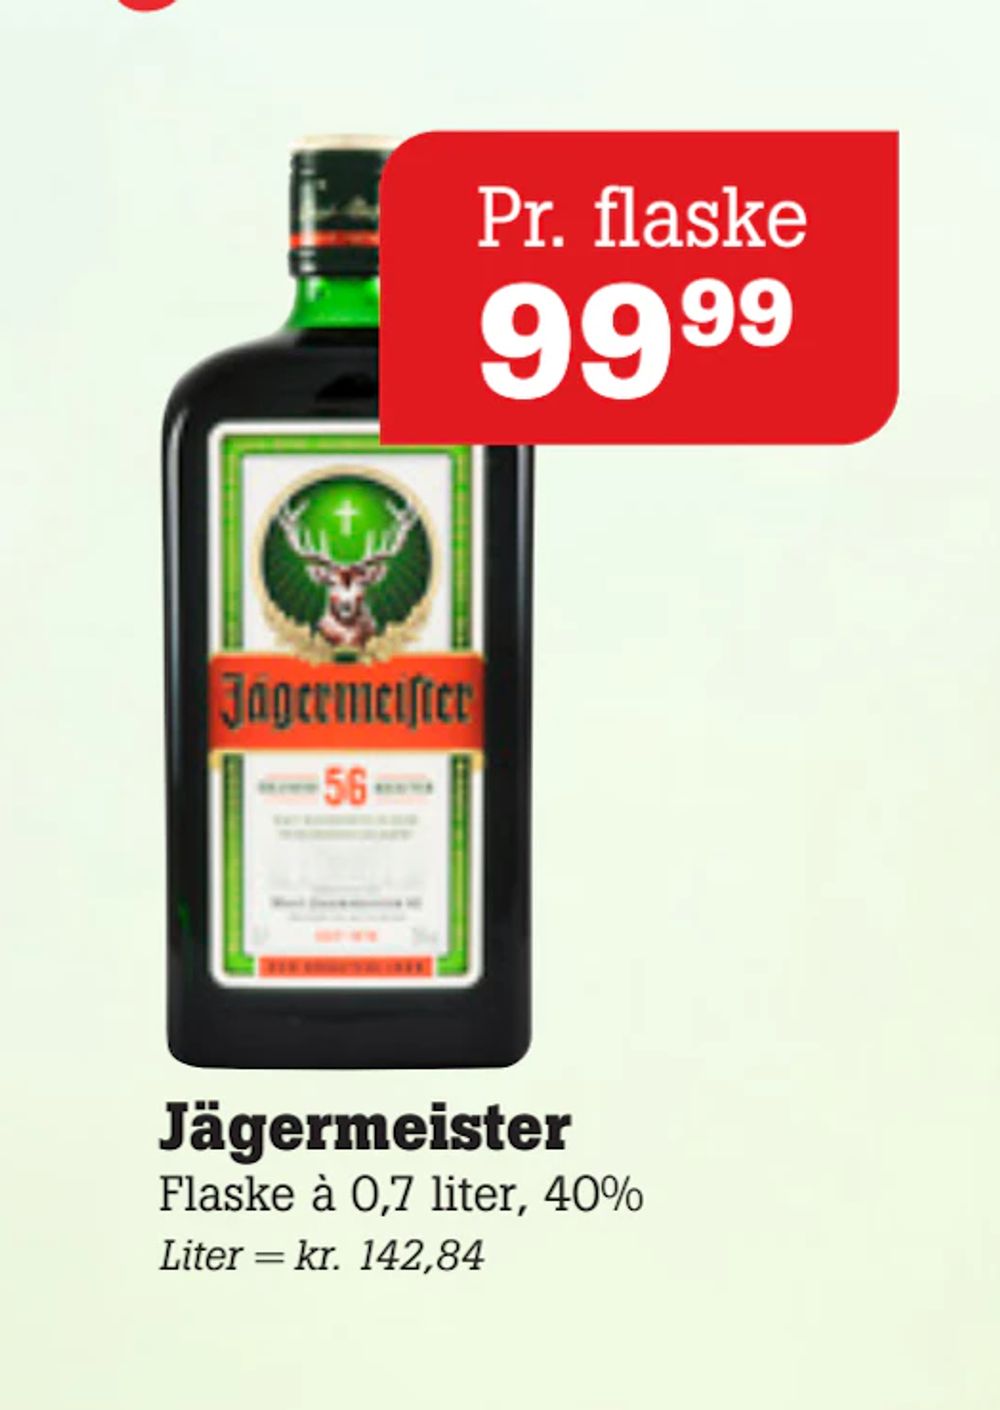 Tilbud på Jägermeister fra Poetzsch Padborg til 99,99 kr.